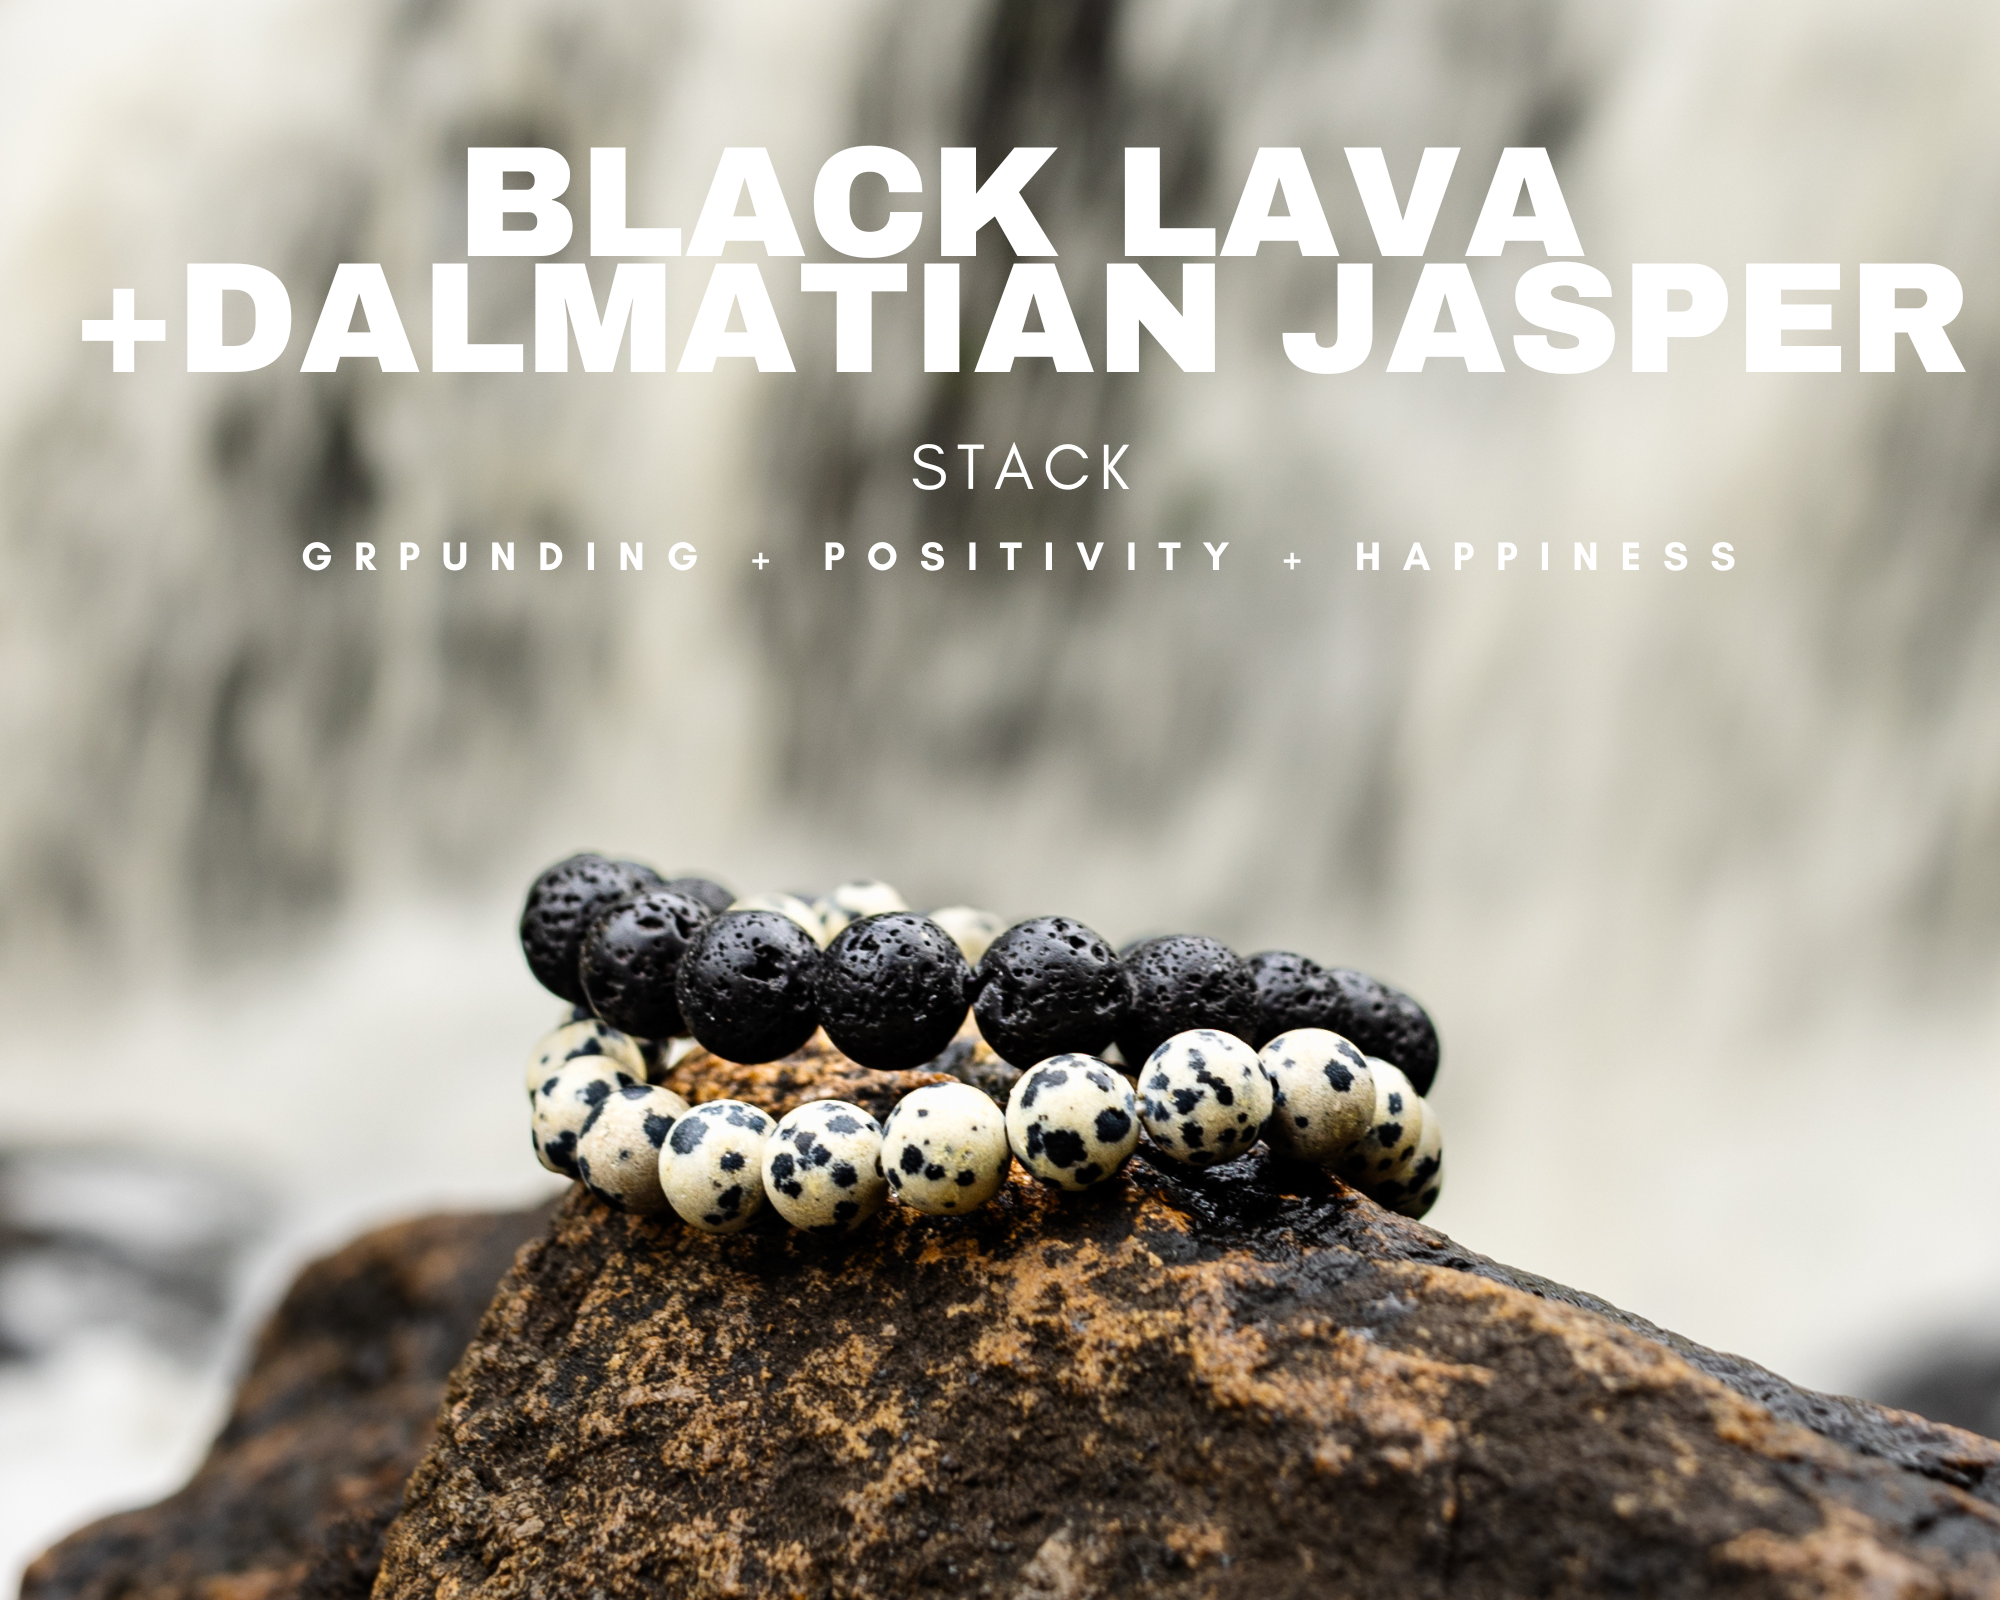 Dalmatian jasper & Black lava Bracelet